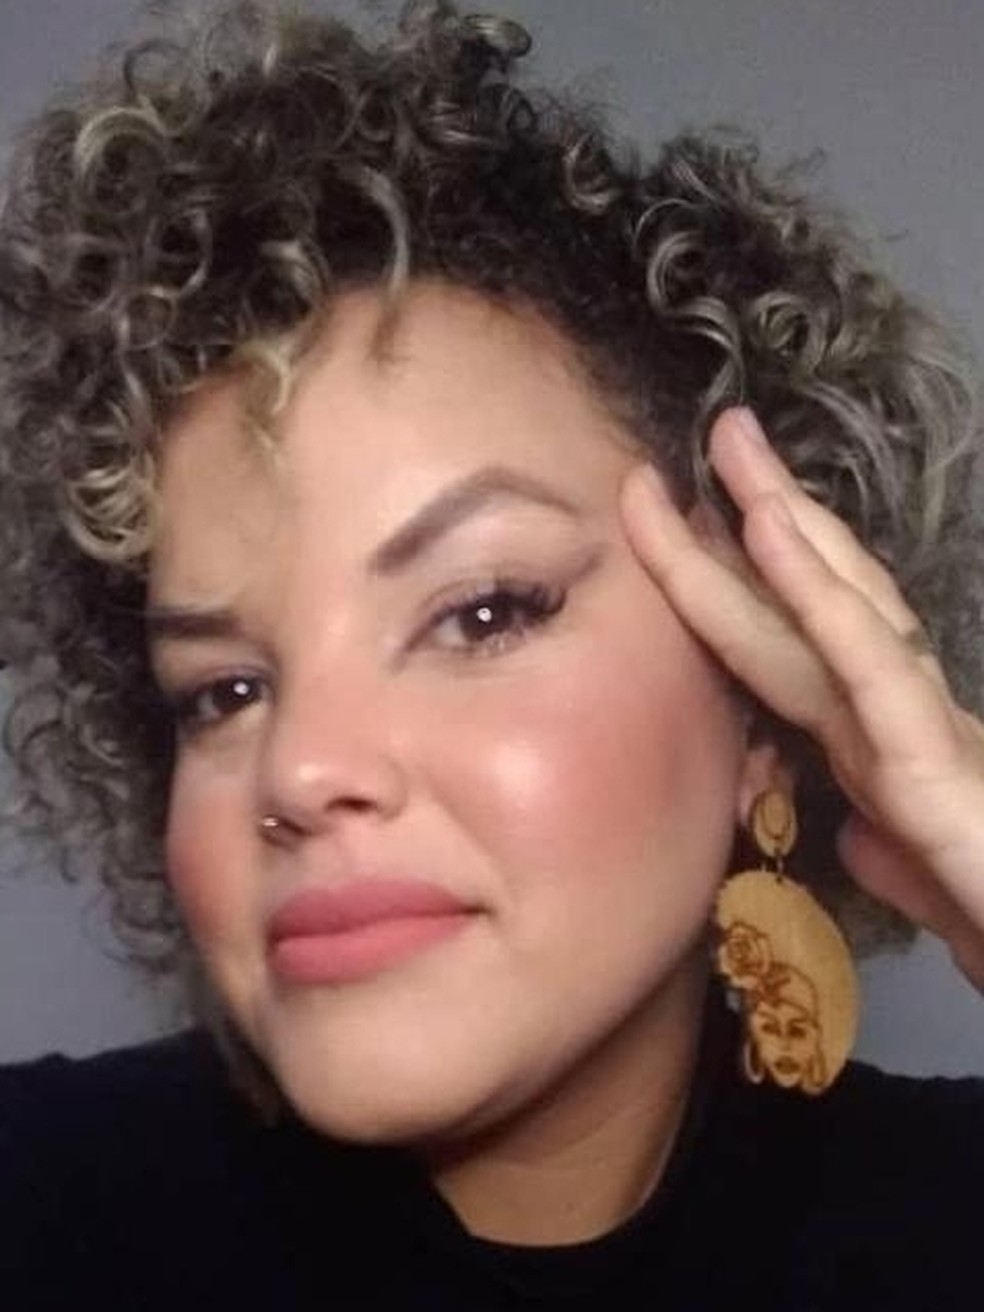 Nágila Flávia Gonçalves estava na UTI após levar 23 facadas do ex em MG — Foto: Redes sociais 